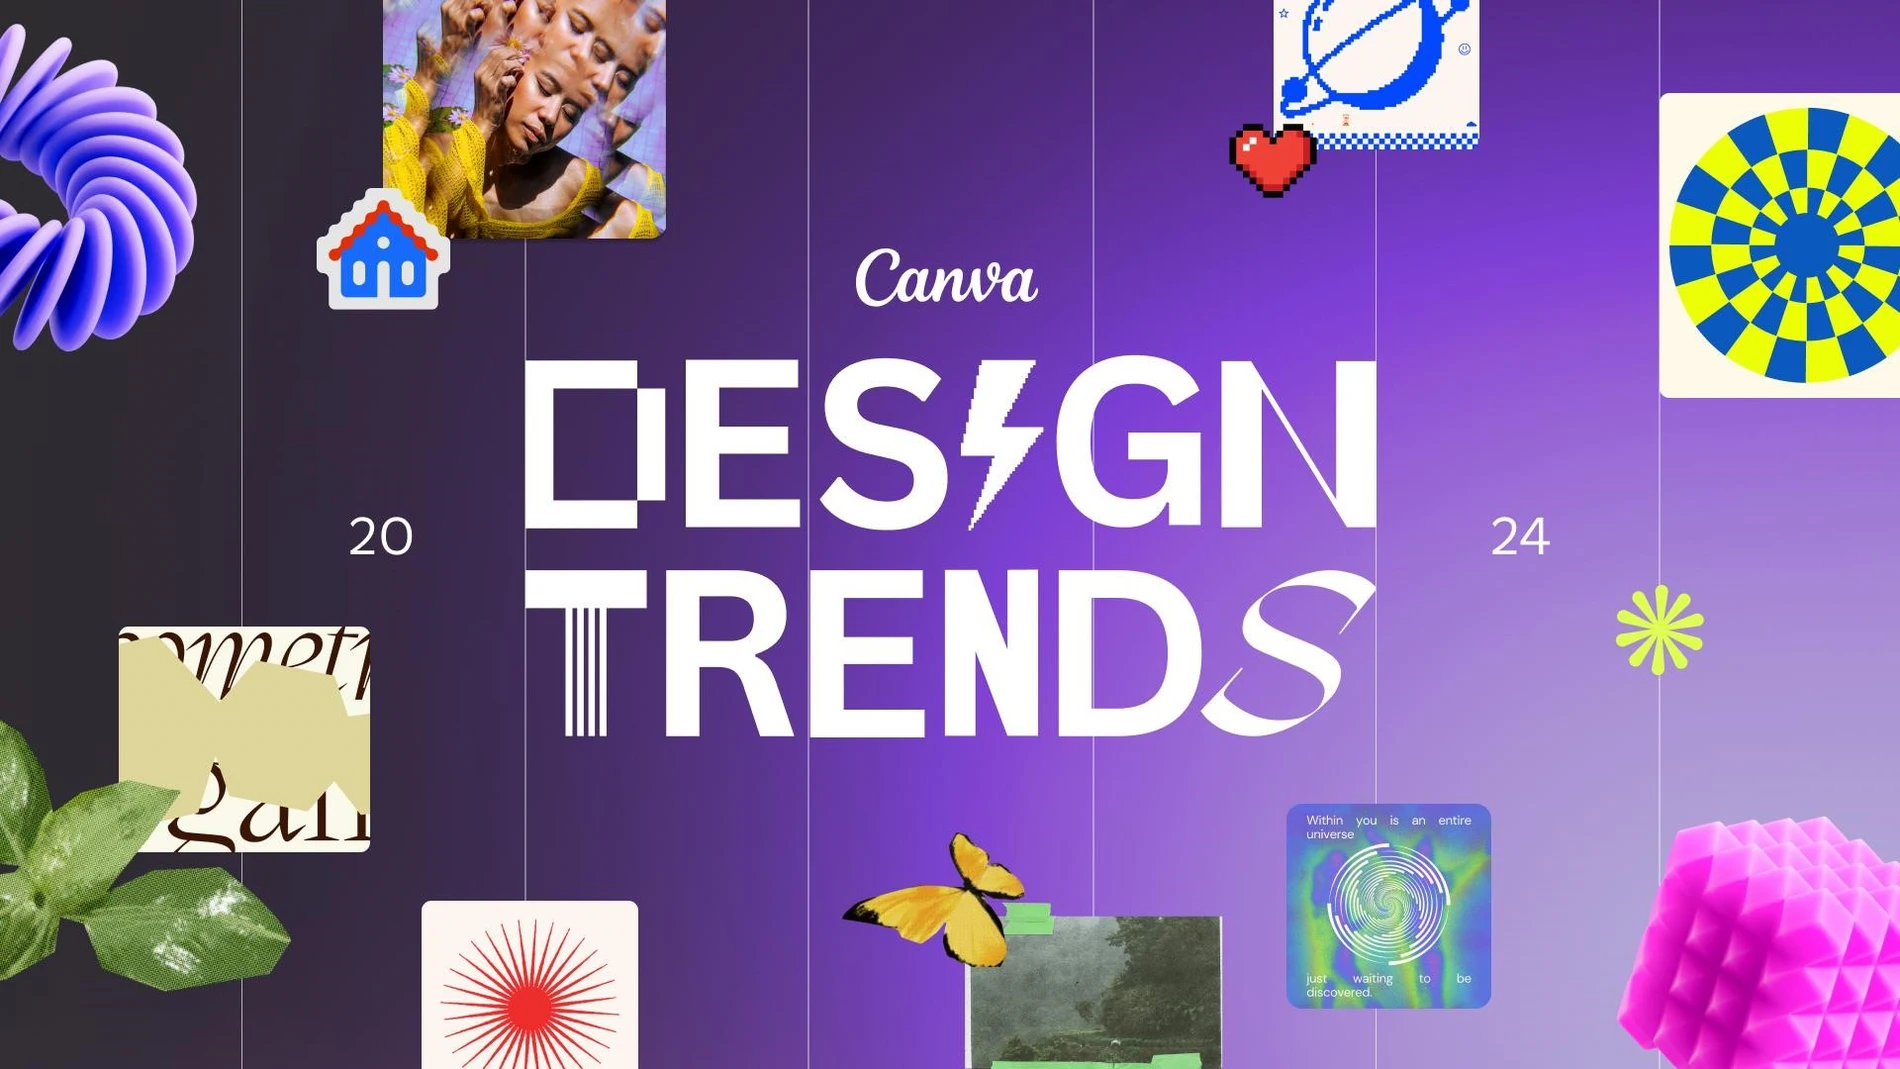 Estas son las tendencias creativas que dominarán la industria del diseño gráfico en 2024